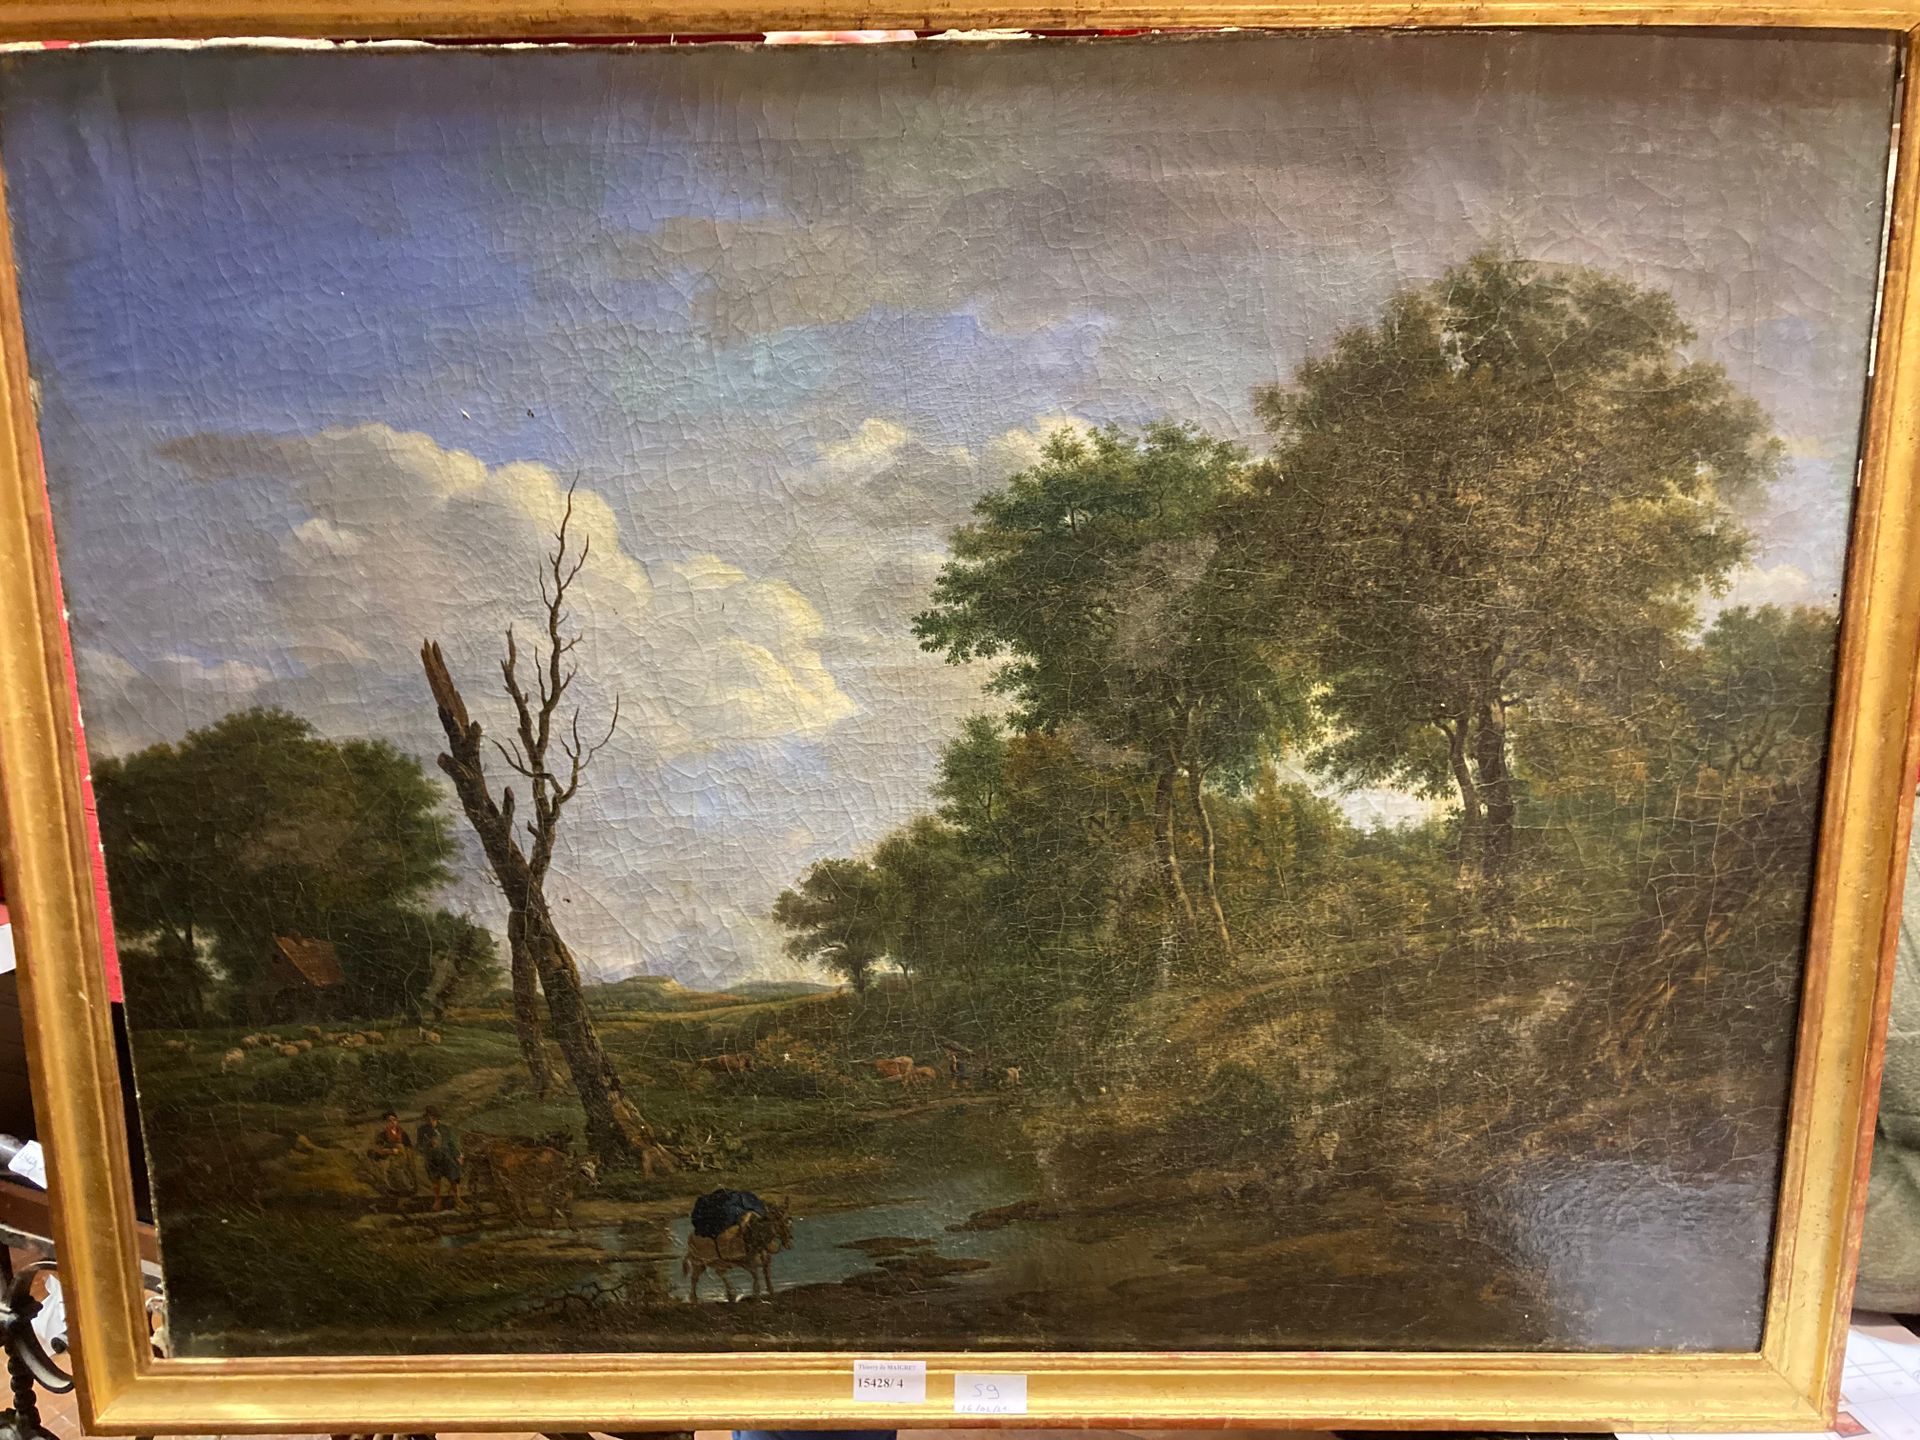 Null 
法家

牧区景观，福德

油画

66 x 84厘米

批量销售的国家比例和修复的。